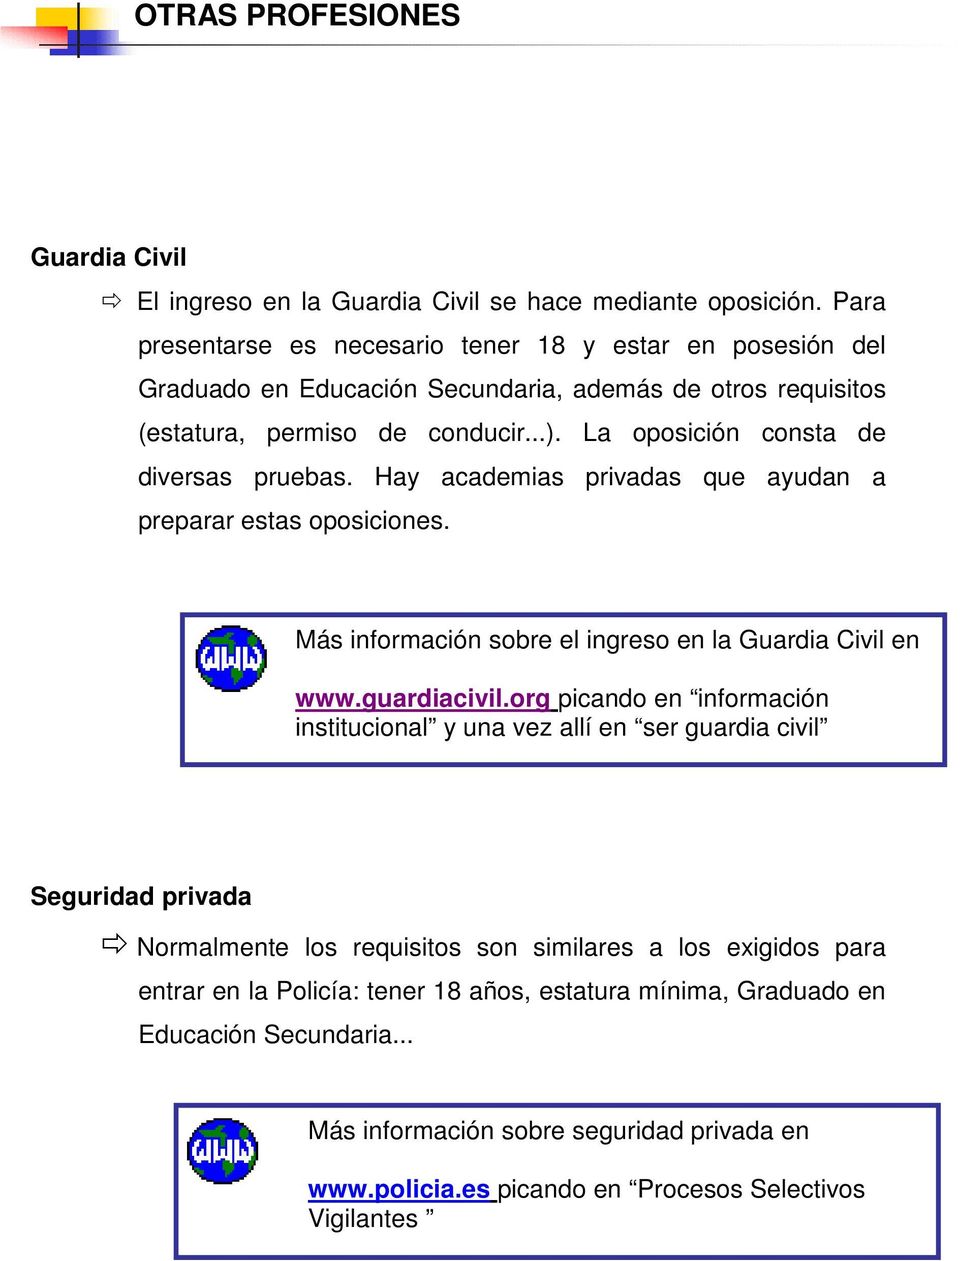 La oposición consta de diversas pruebas. Hay academias privadas que ayudan a preparar estas oposiciones. Más información sobre el ingreso en la Guardia Civil en www.guardiacivil.